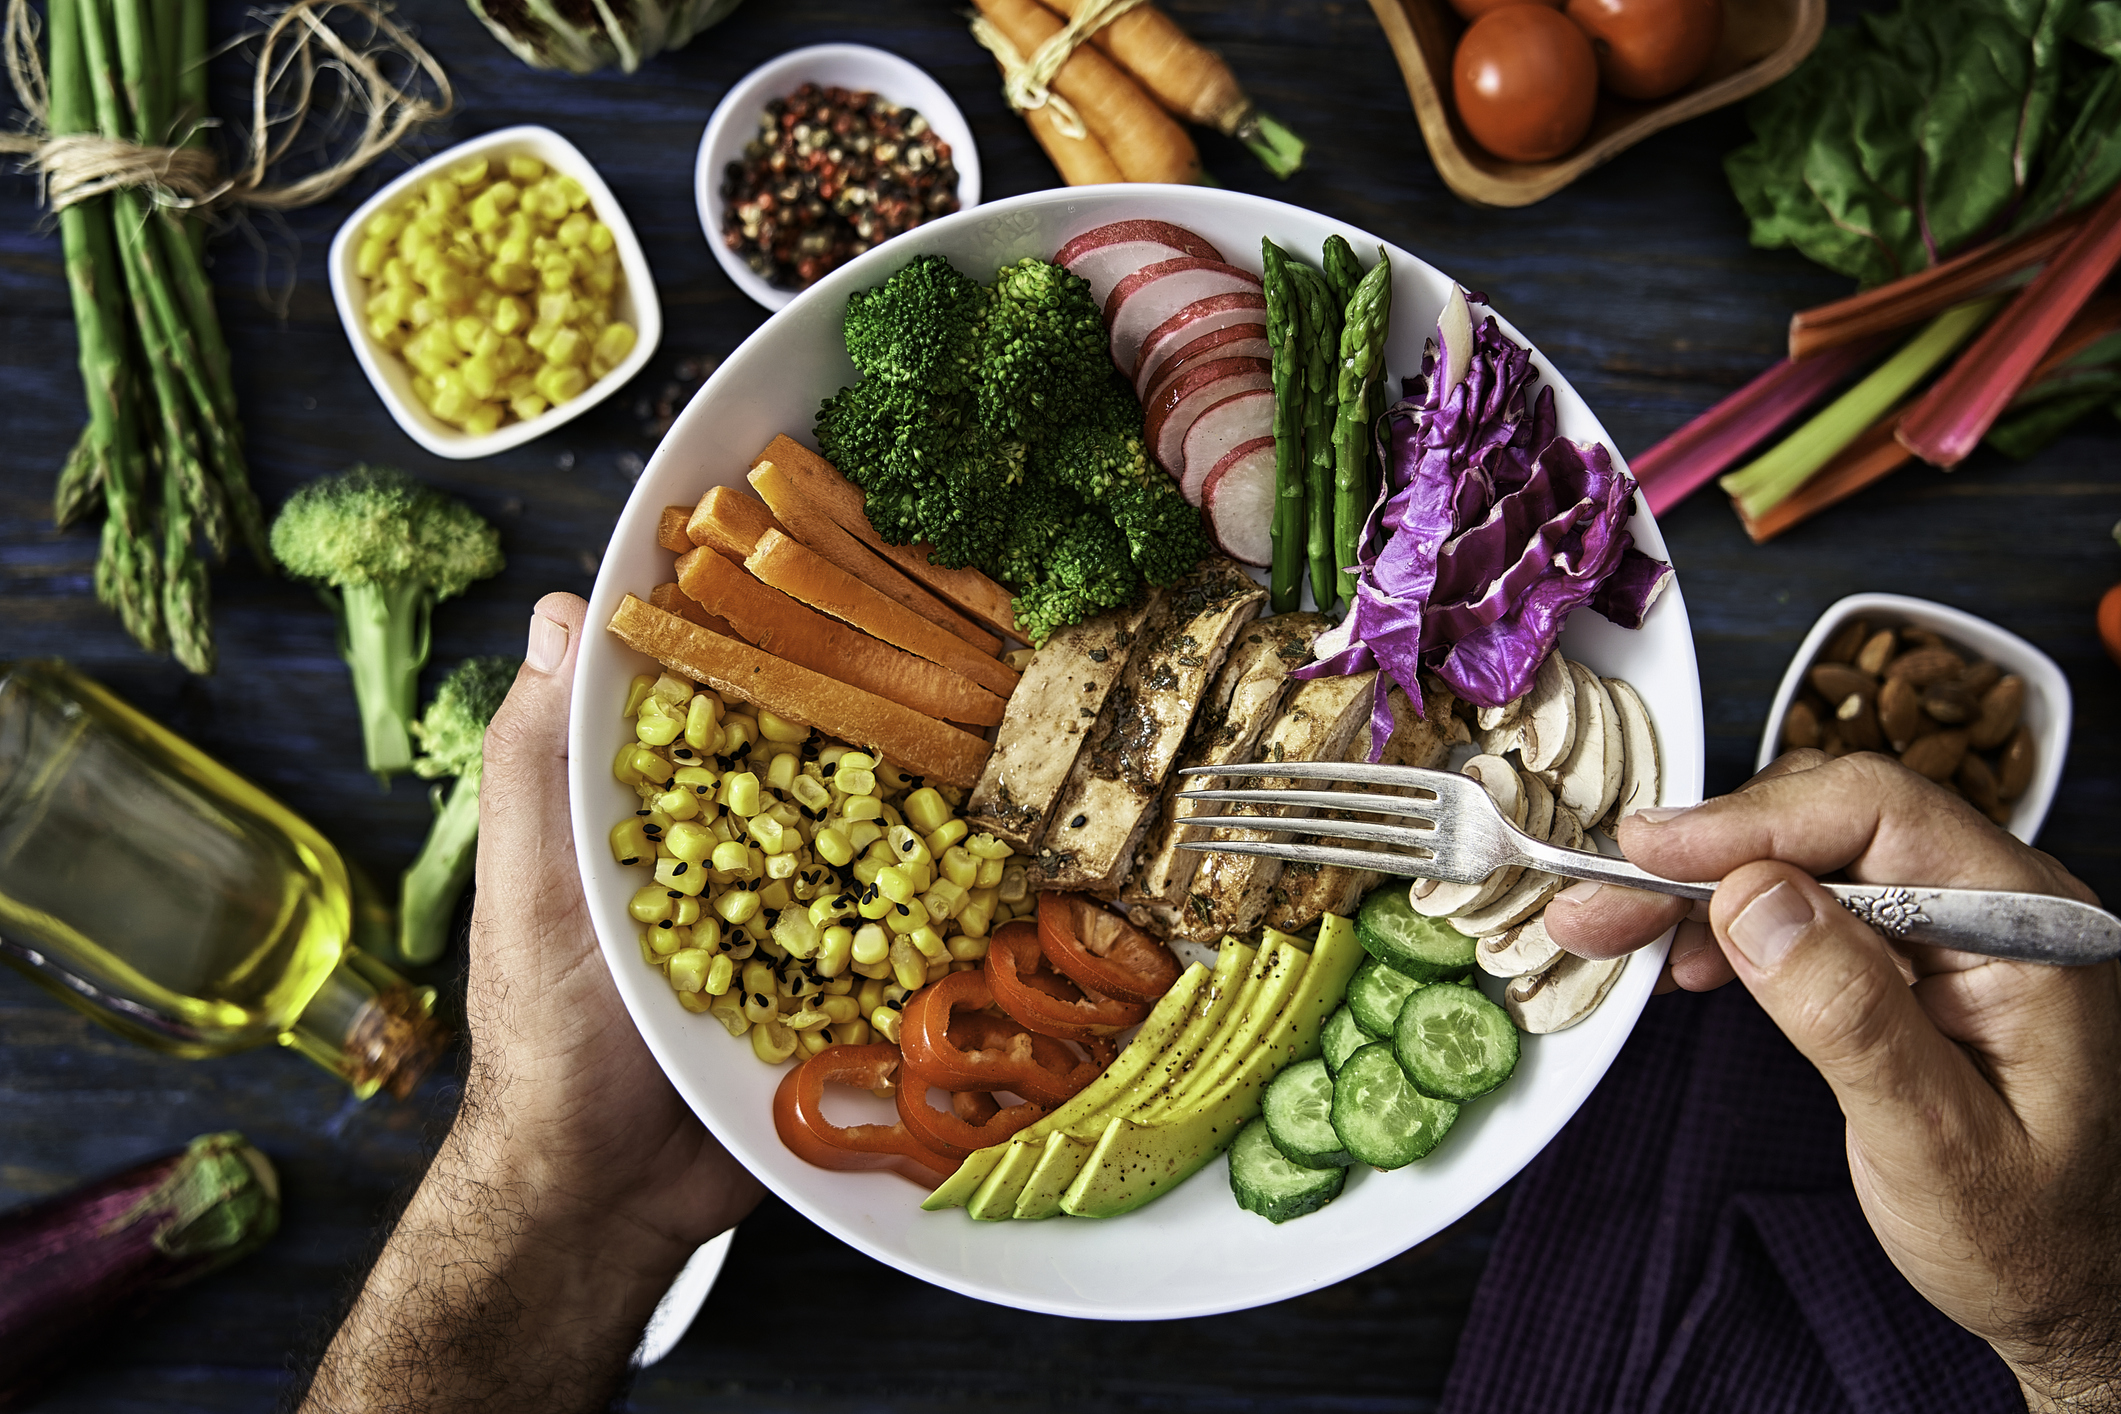 Priorizas los platos bajos en grasas, no muy calientes y con abundantes verduras (Getty Images)